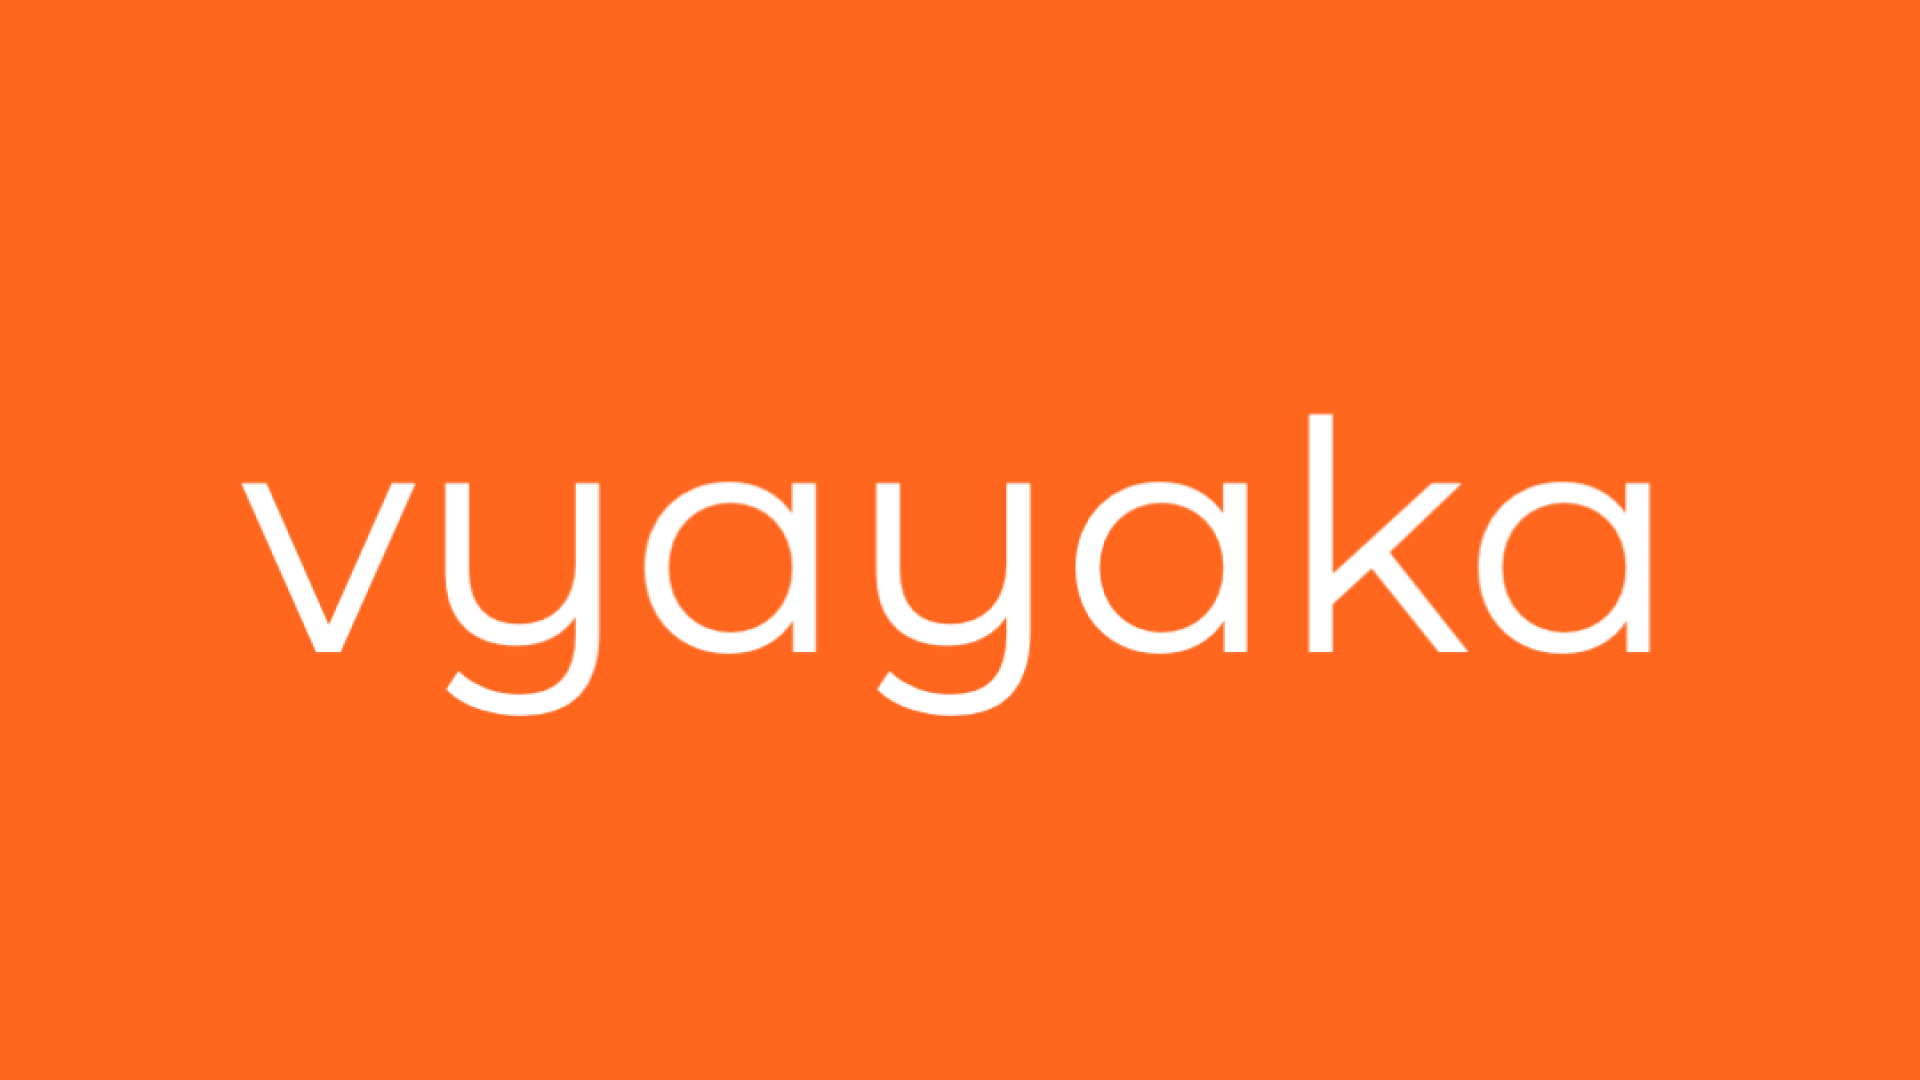 Vyayaka logo in white